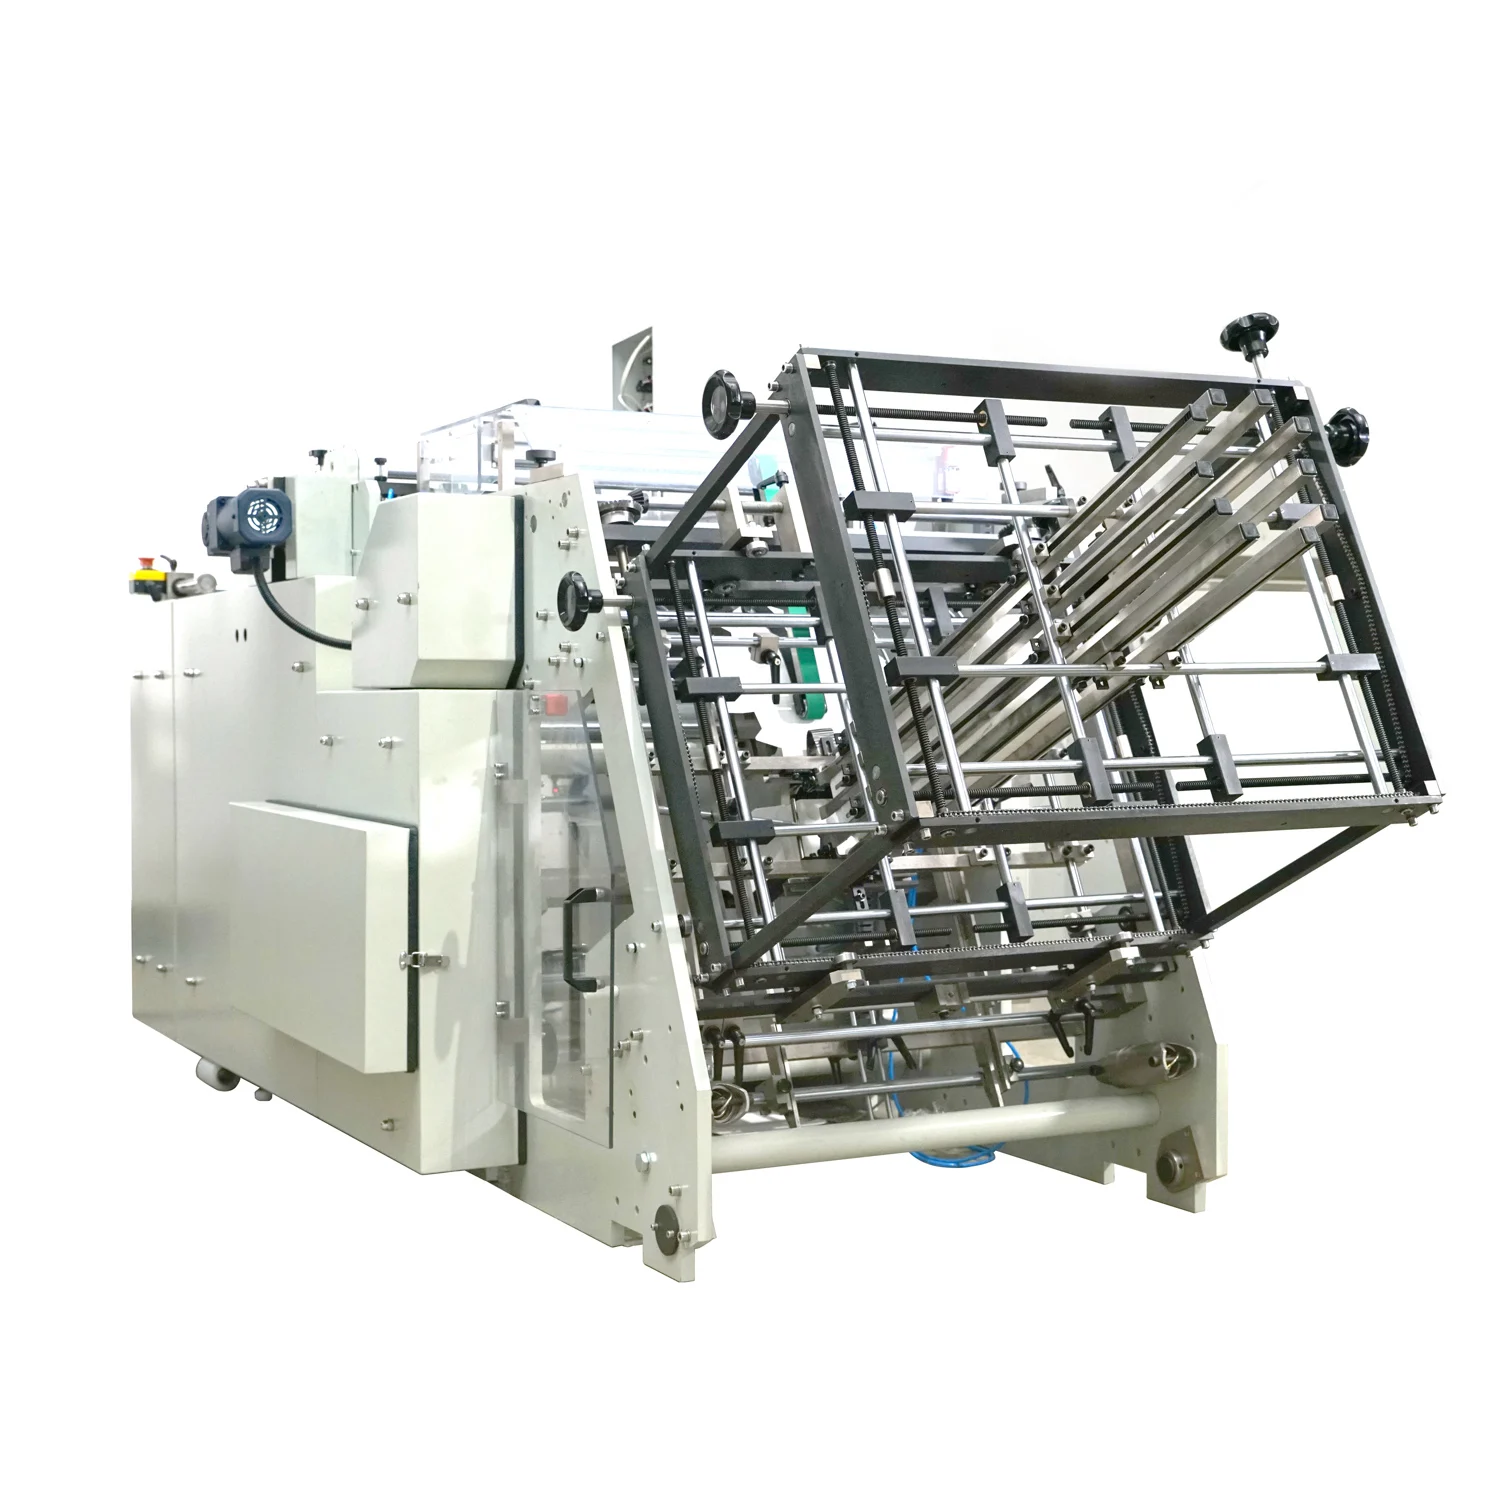 所有行业  机械设备  造纸机械  纸制品加工机械  机器类型   l800-a